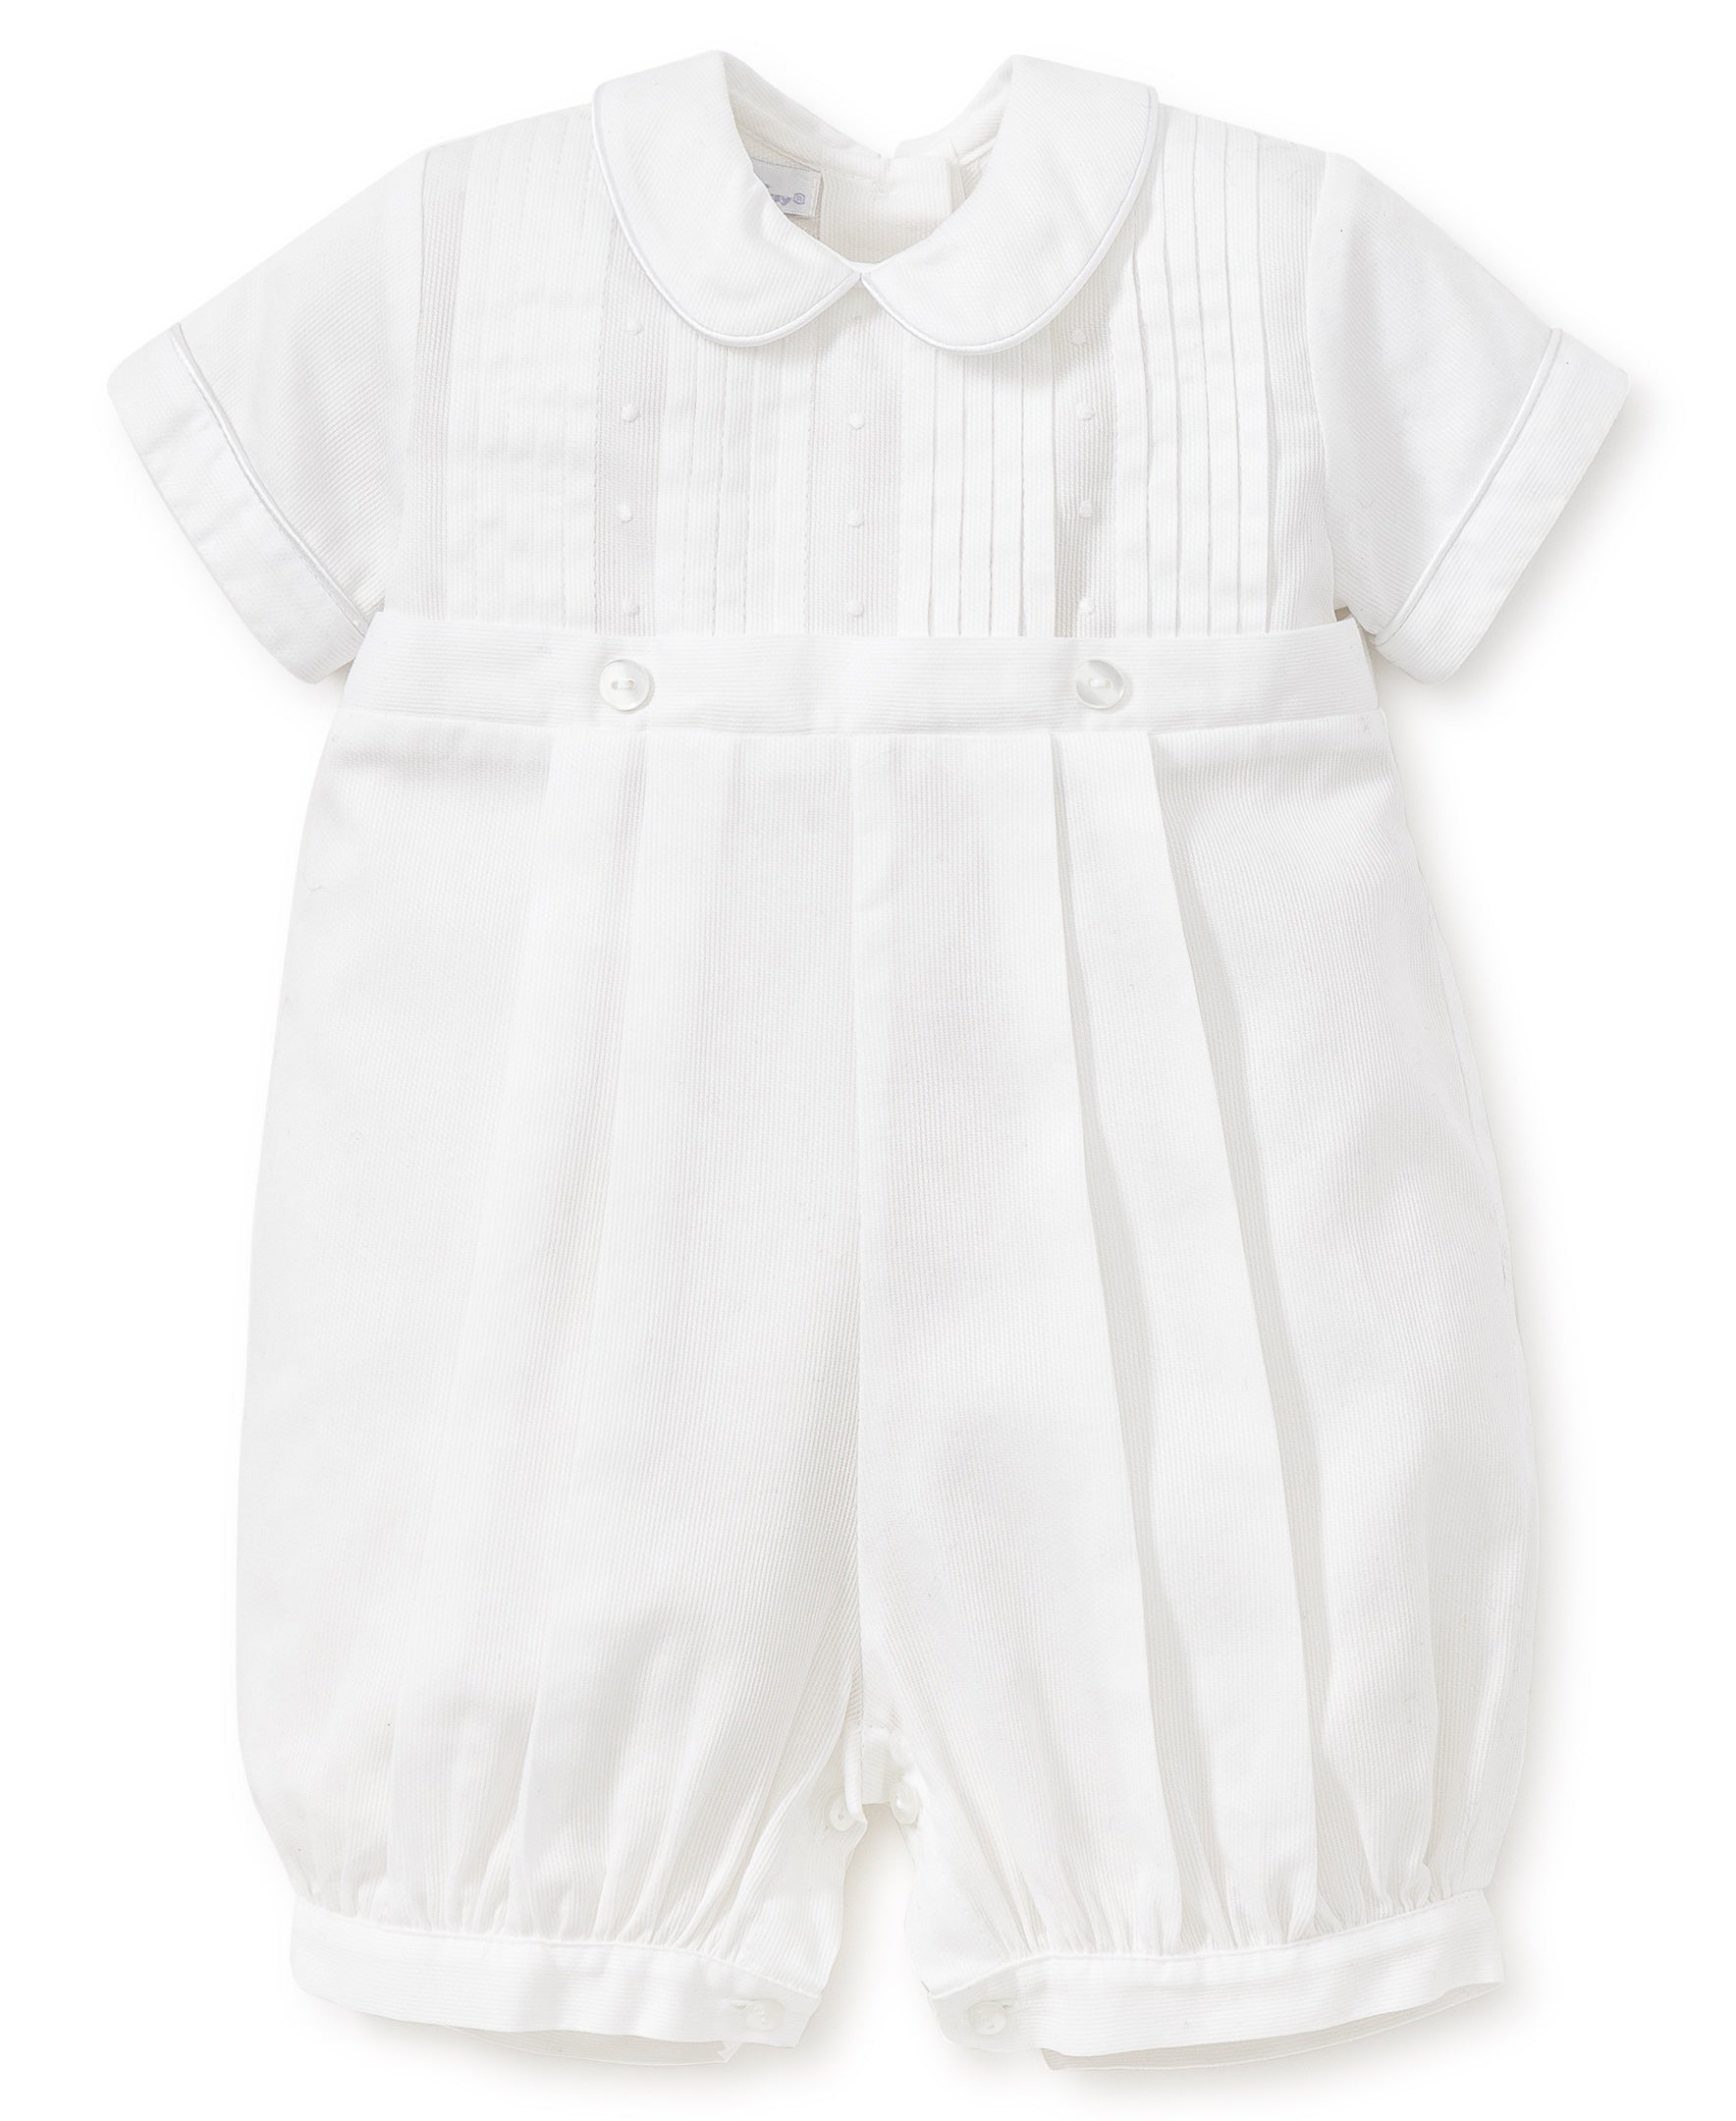 Nordstrom White Dresses for Girls Sizes 0-24 mos | Mercari